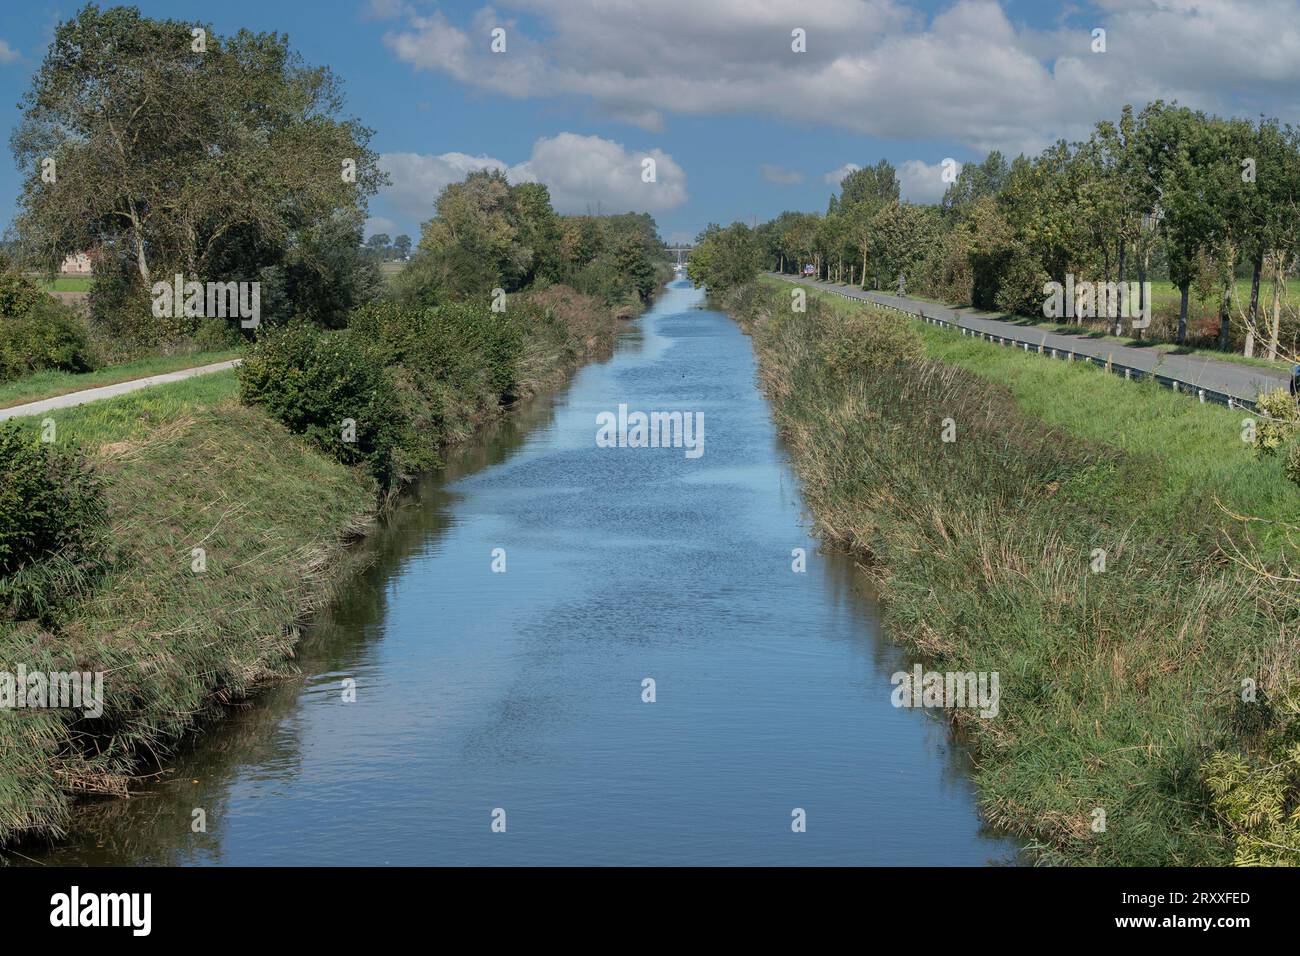 Canal de Lovaart en Belgique Banque D'Images